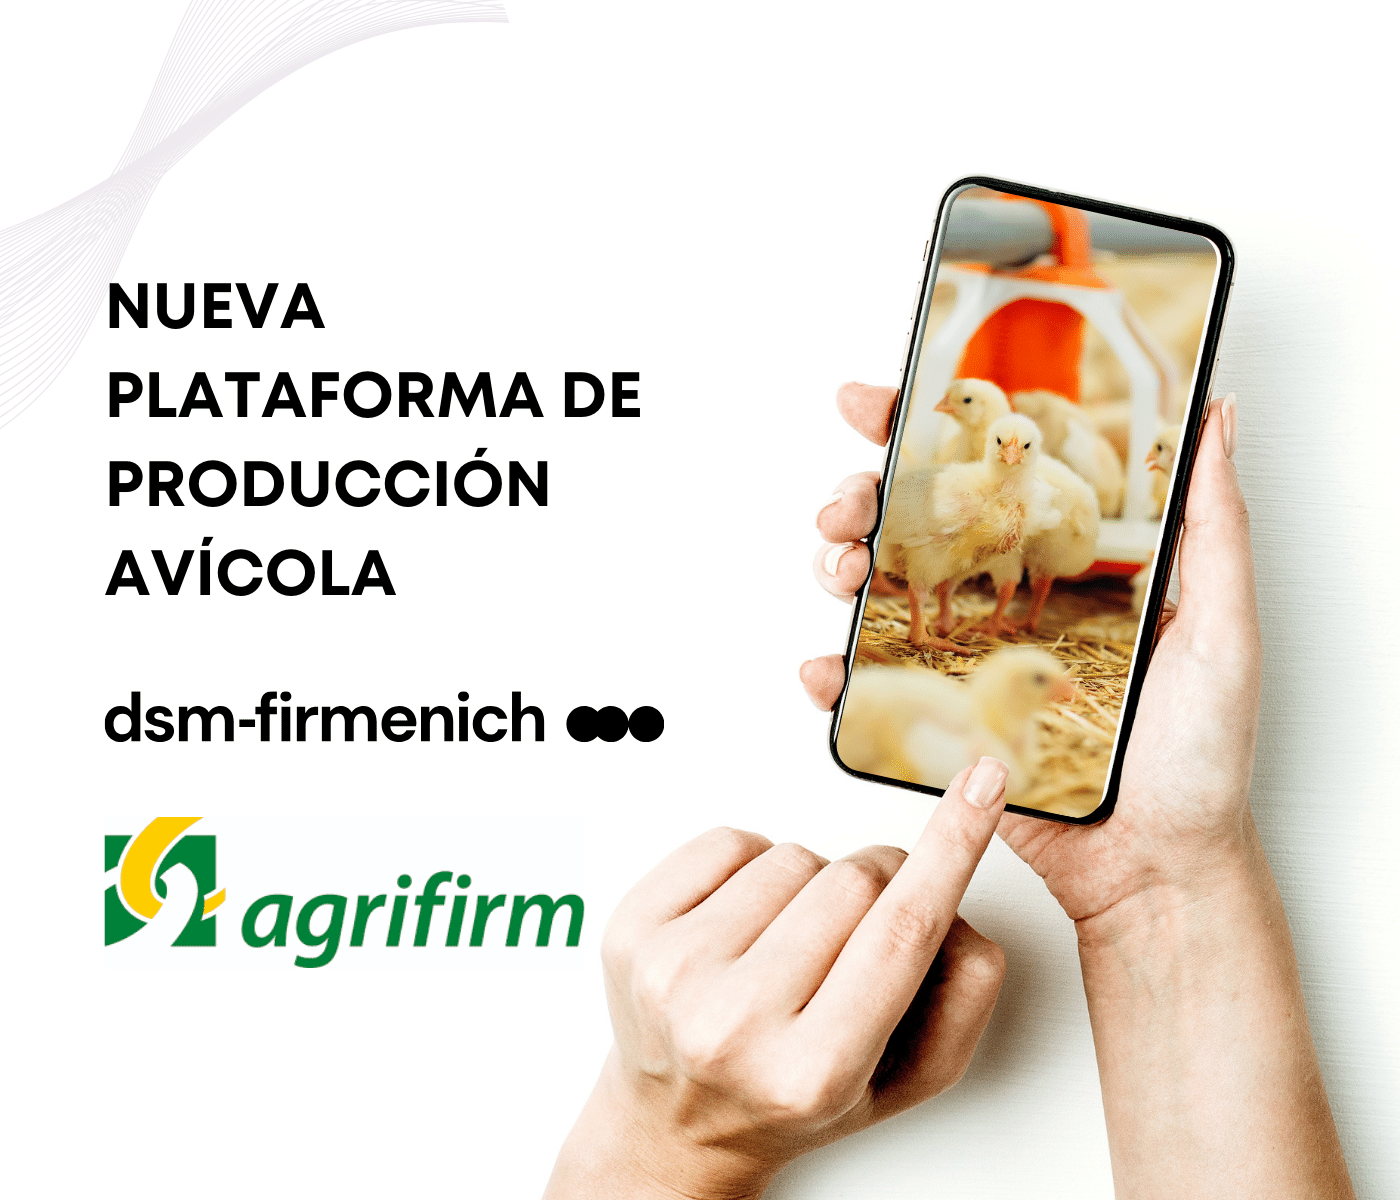 dsm-firmenich y Agrifirm se asocian para crear una nueva plataforma de producción avícola transparente, sostenible y responsable